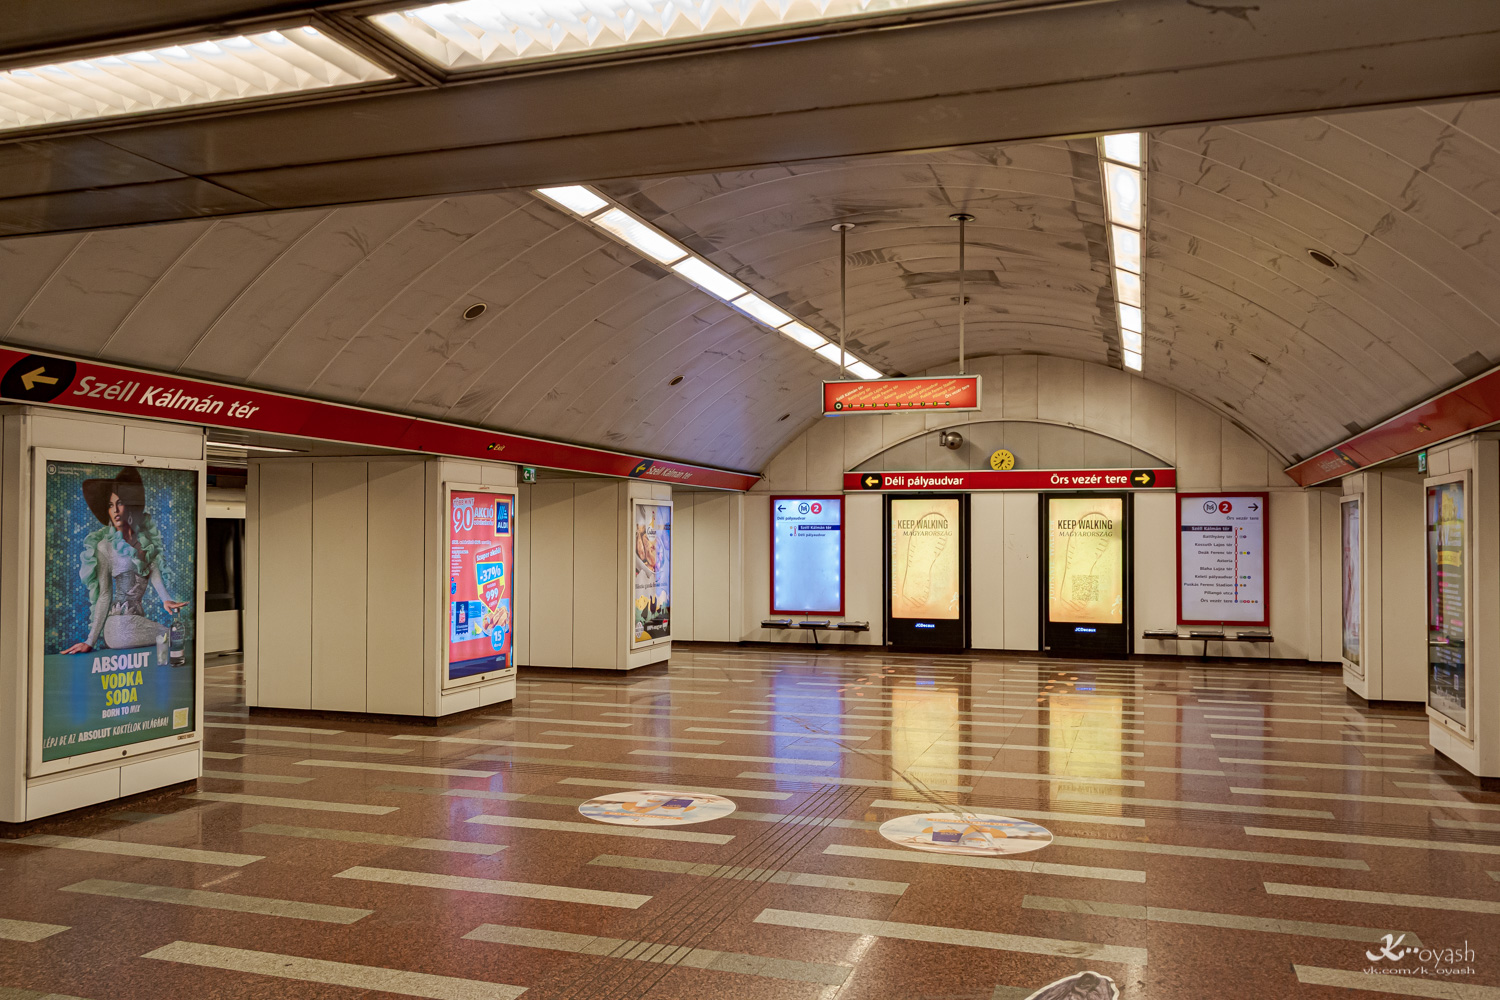 Budapest — Metro (M2, M3, M4)